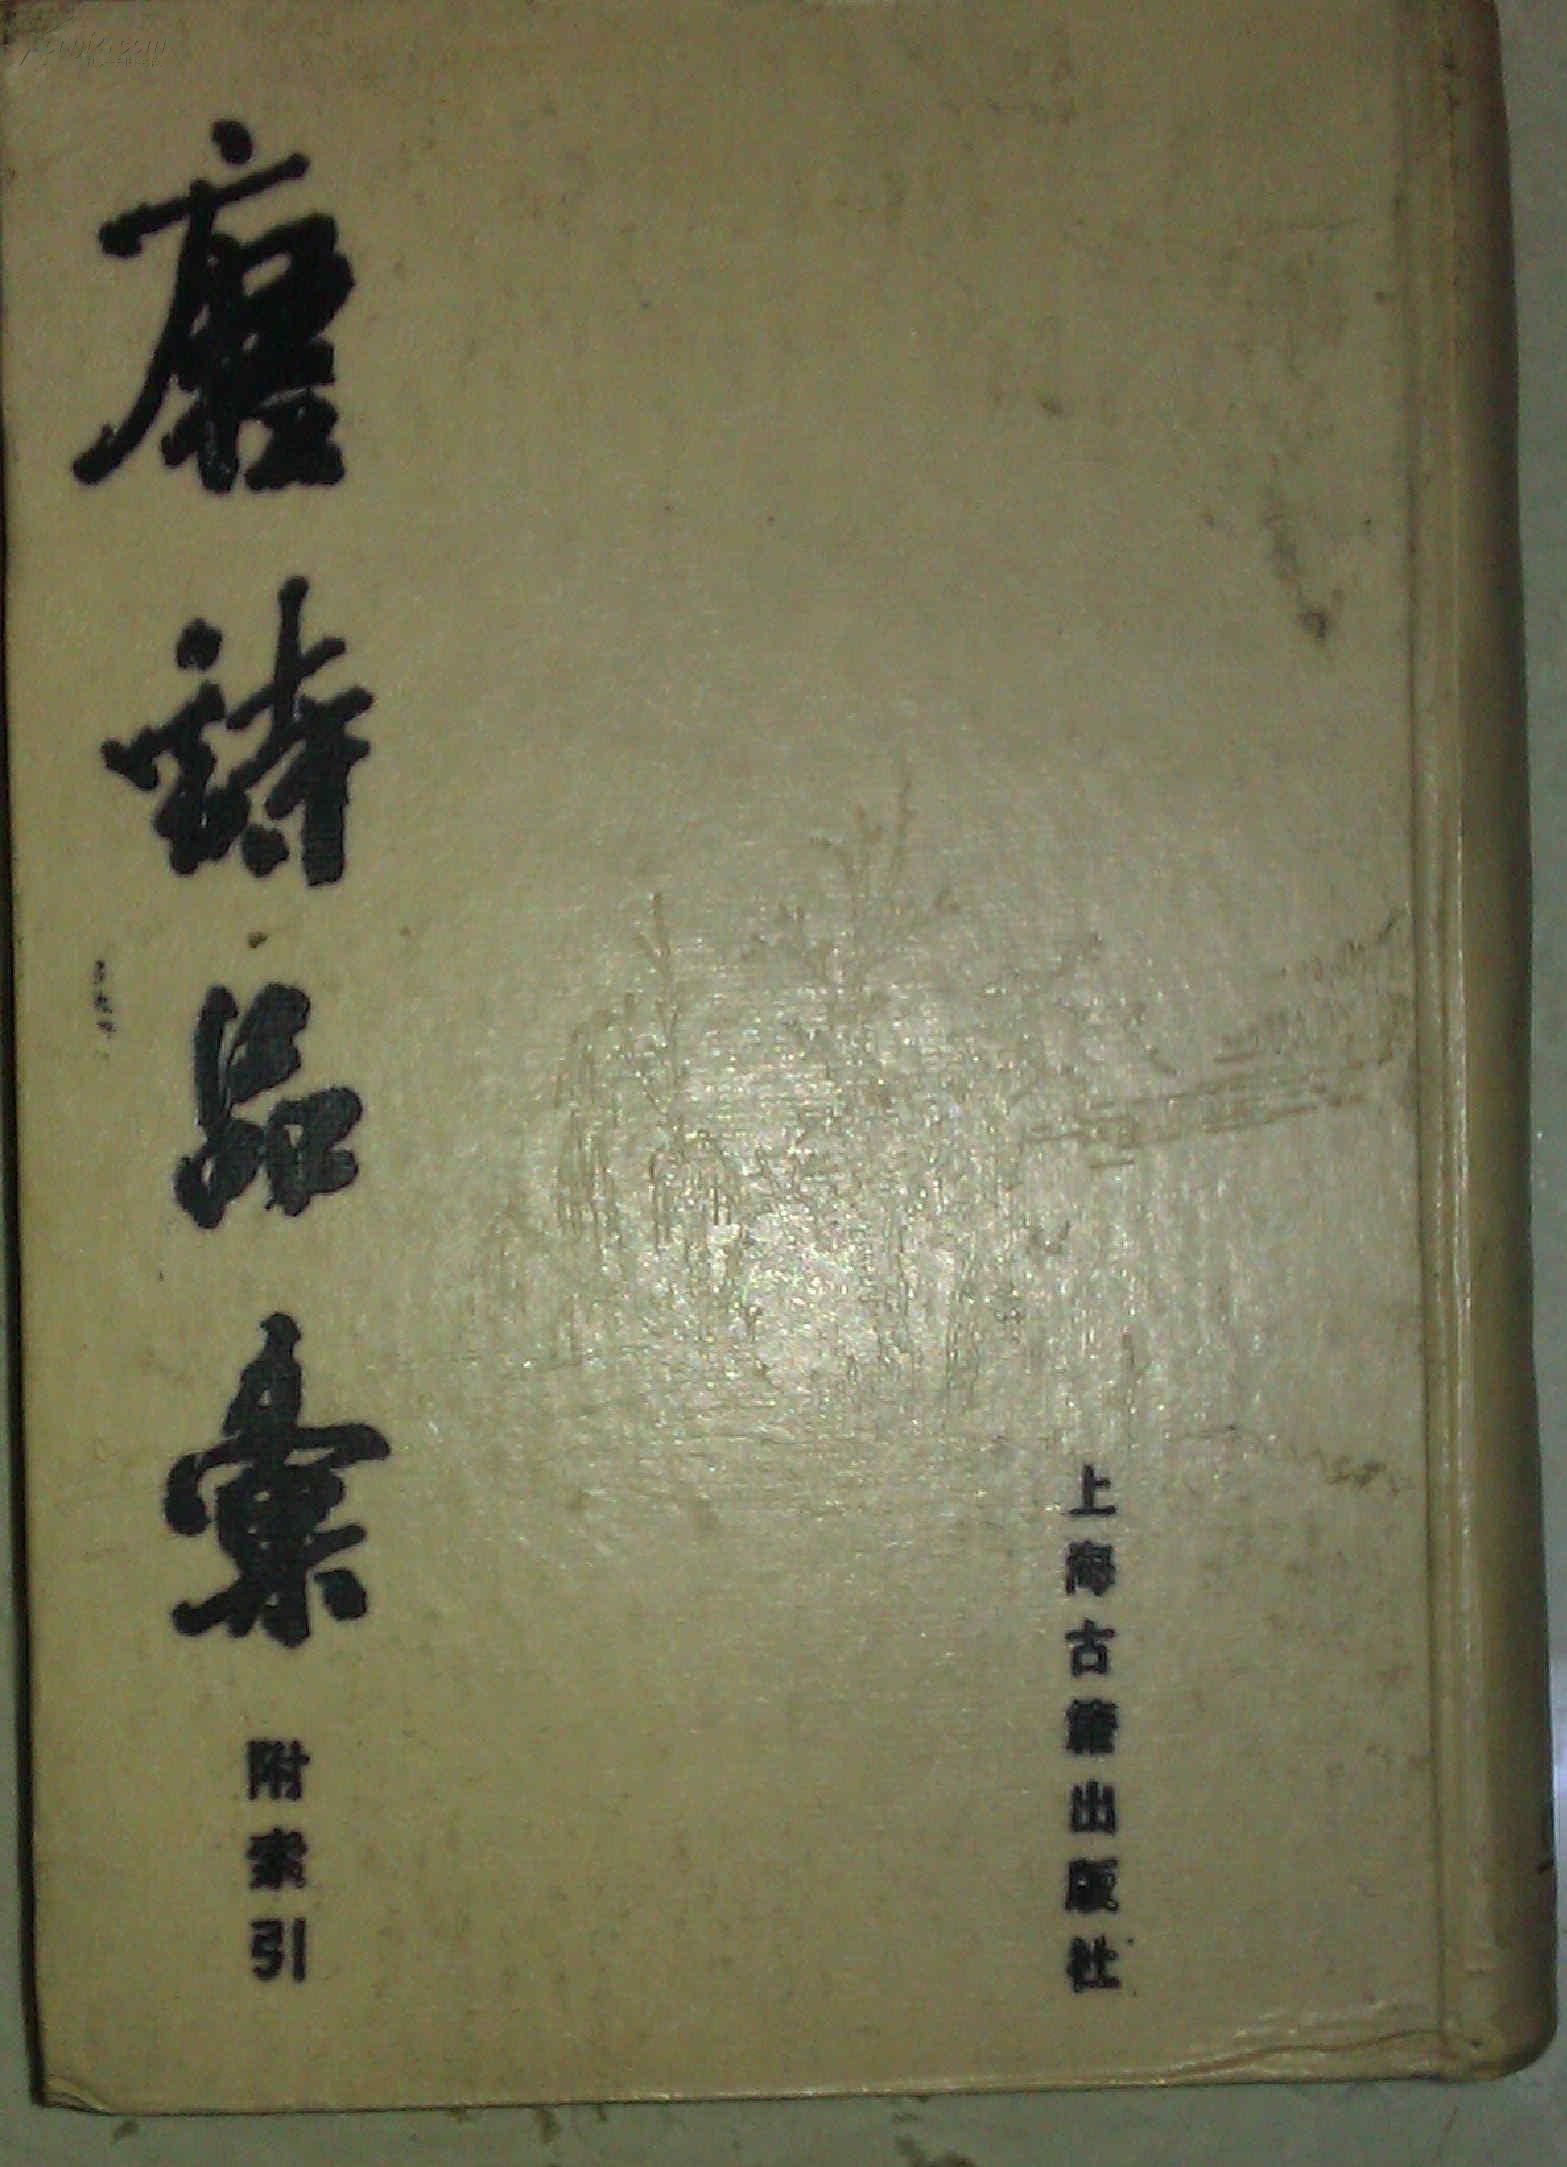 唐诗品汇  附索引  古版影印 硬精装  上海古籍出版社1988年一版一印   私藏未阅品好